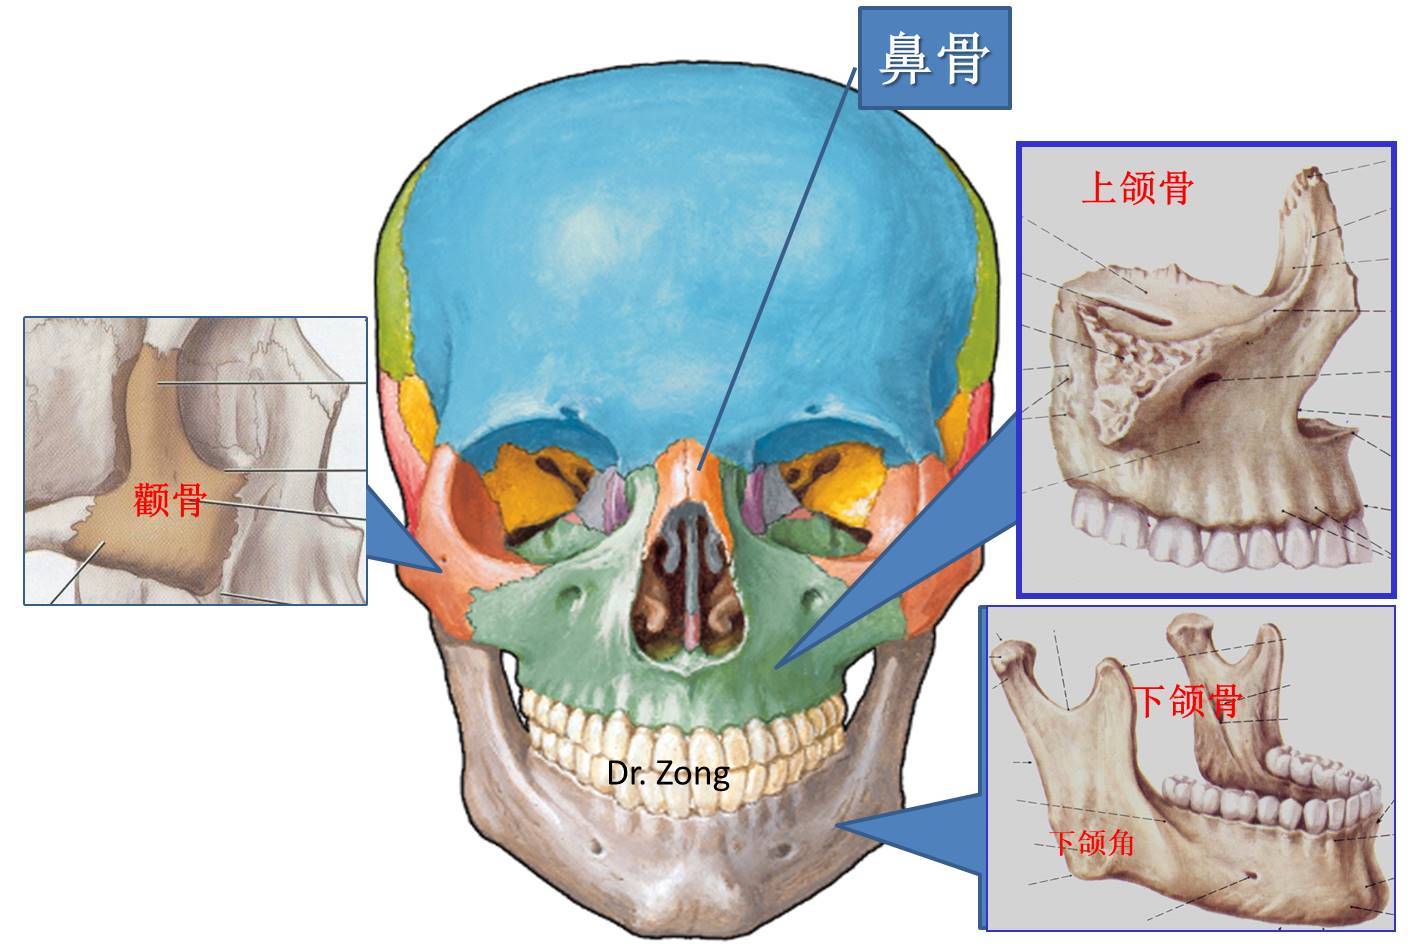 上颌六的解剖形态图片